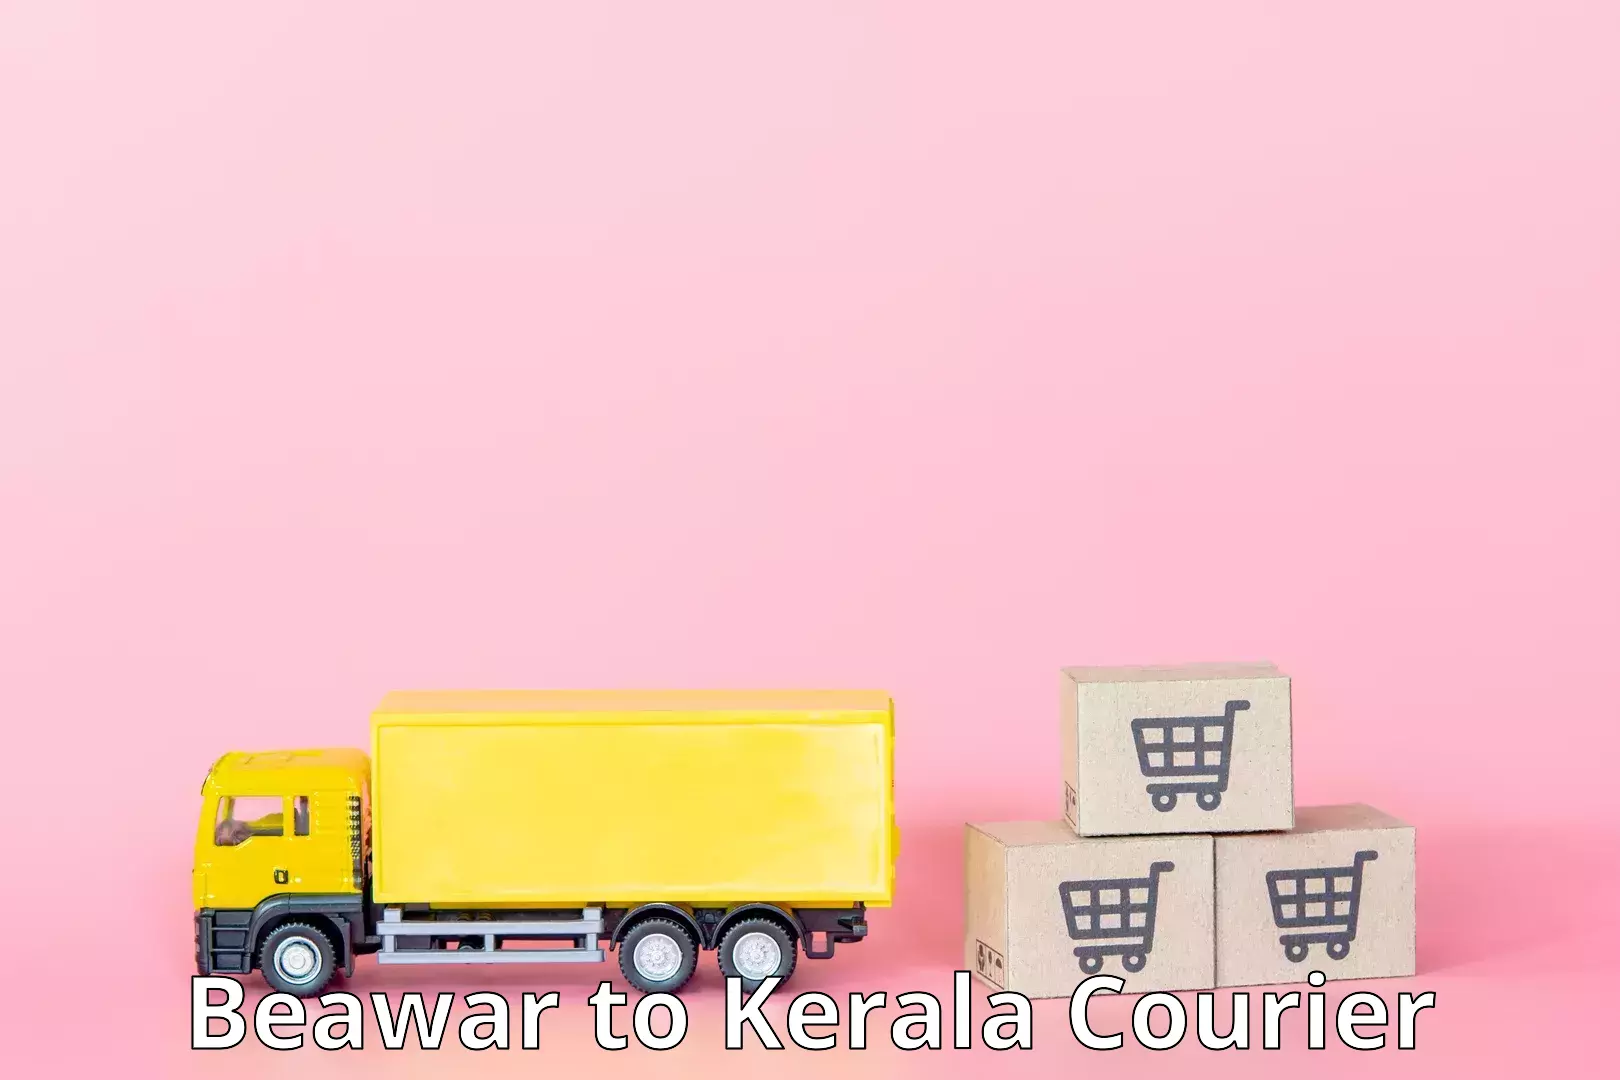 High-priority parcel service Beawar to Kerala